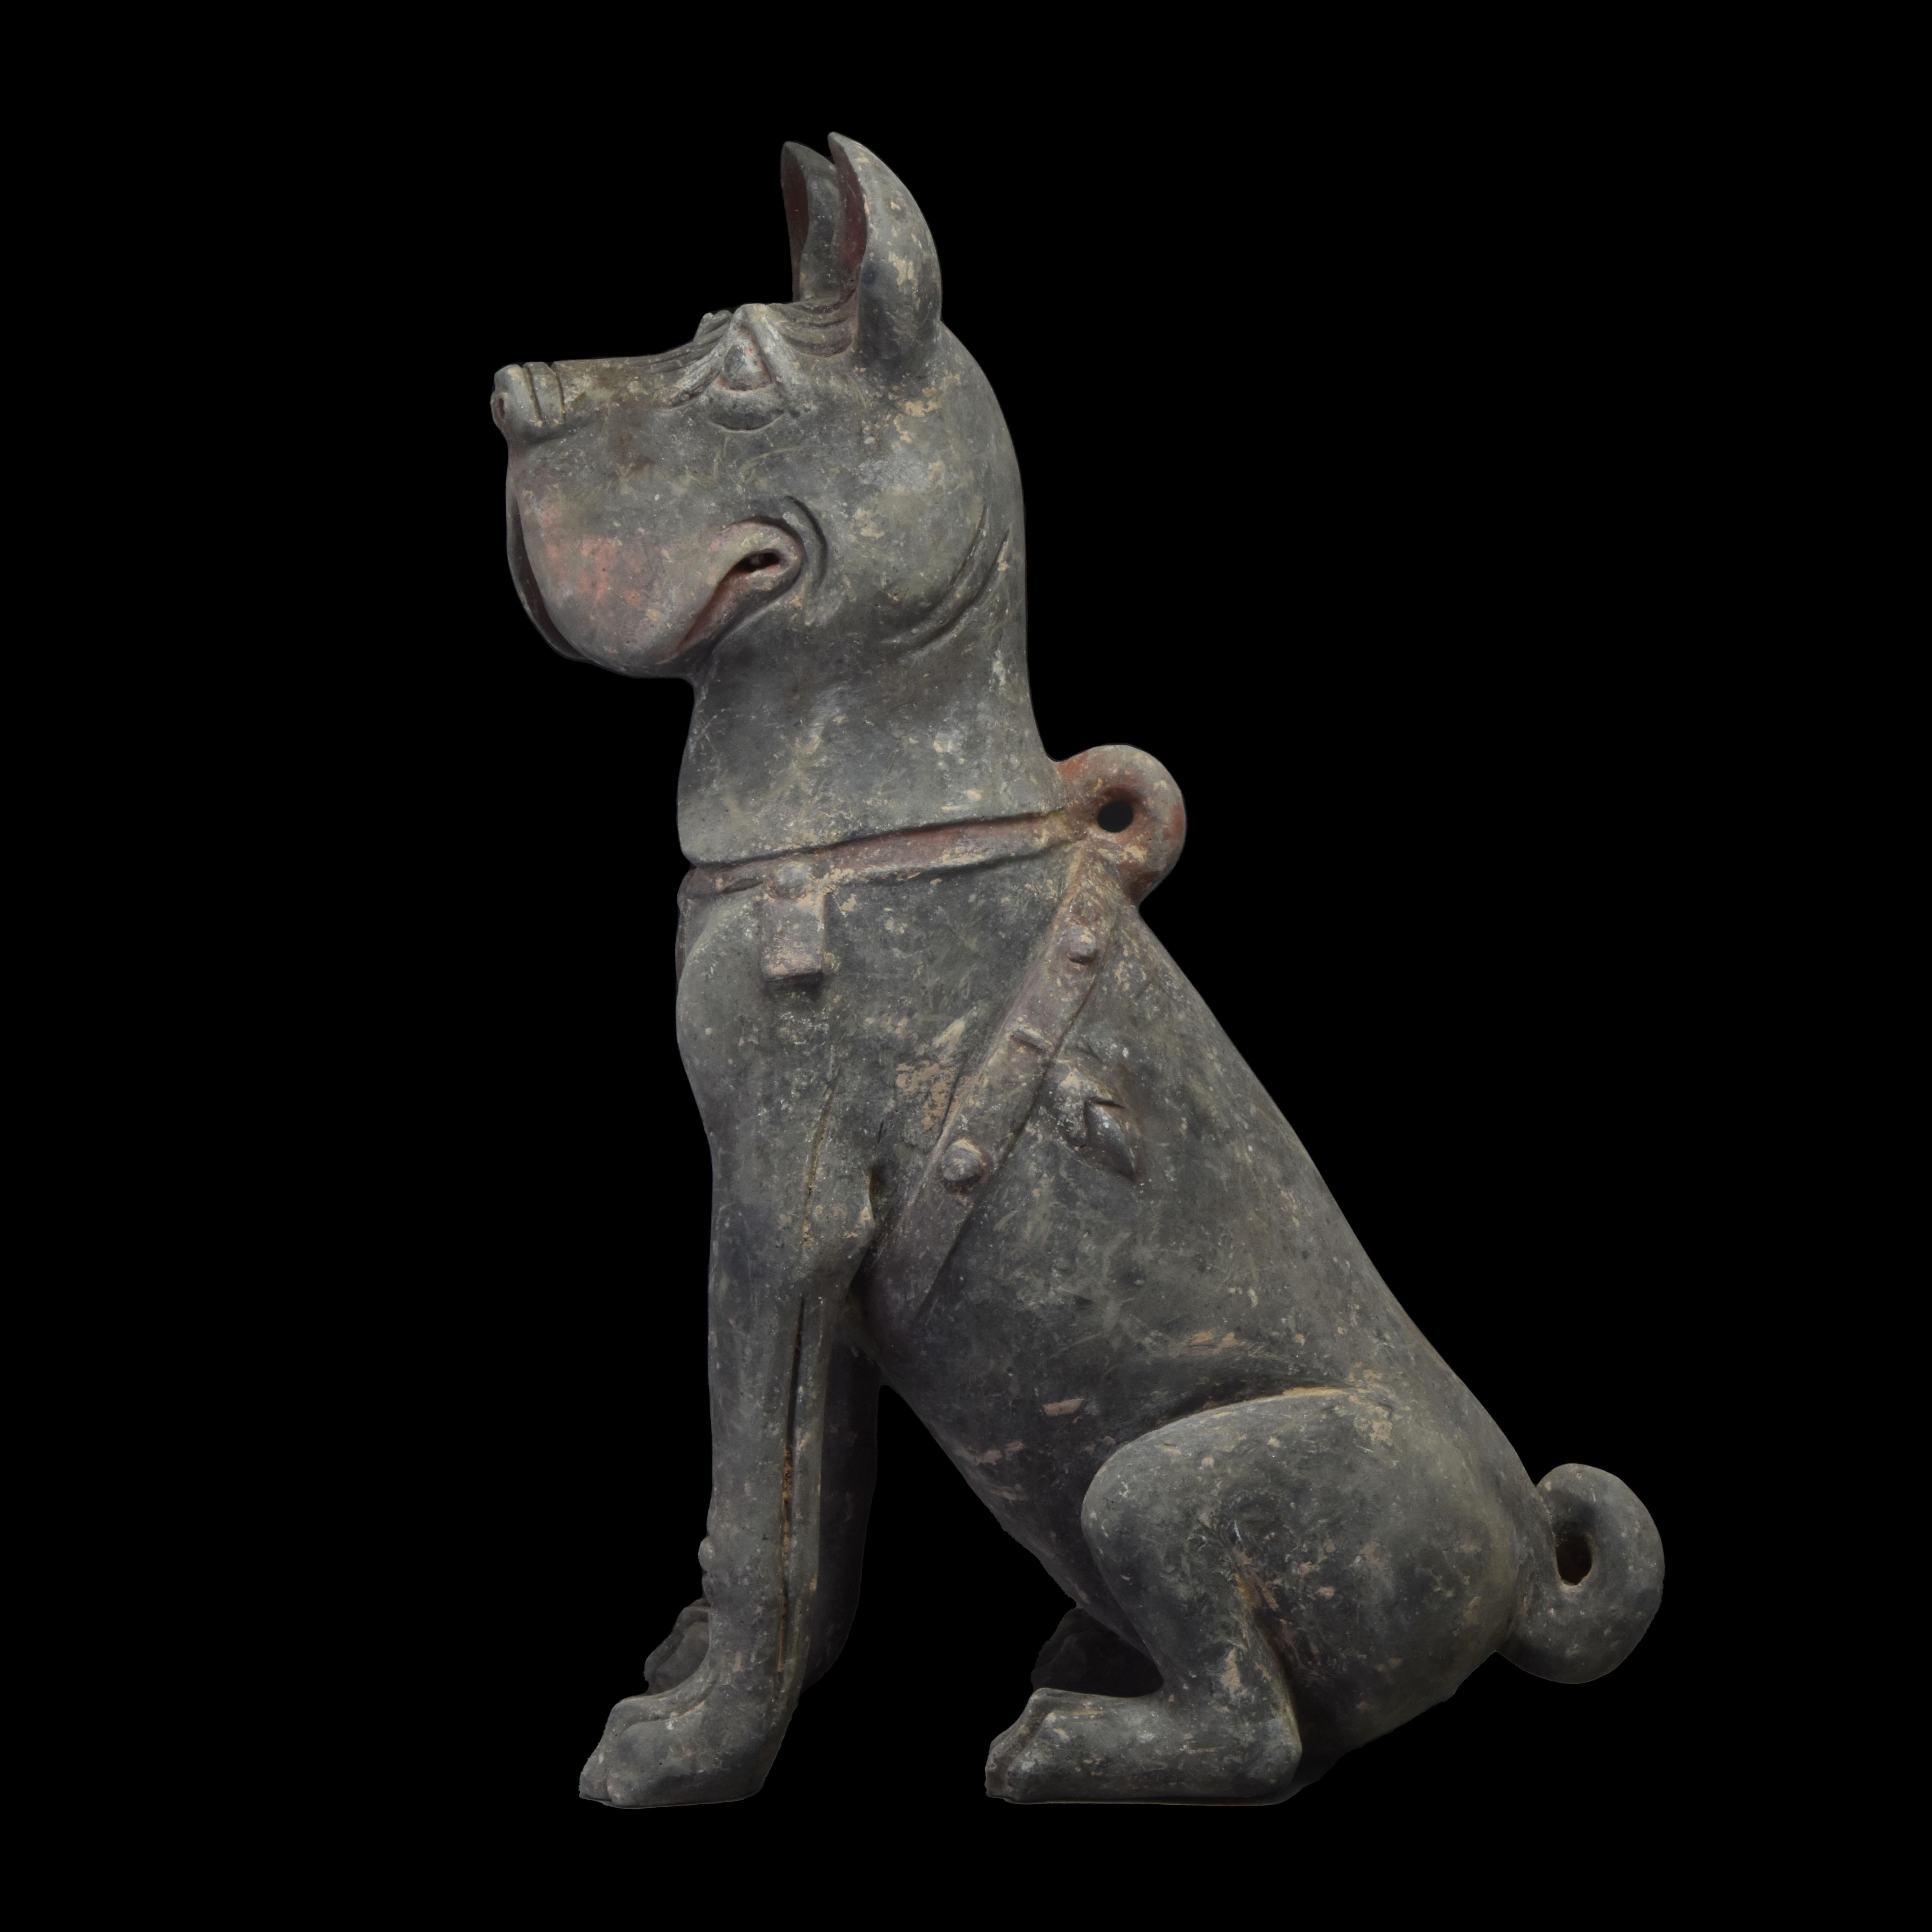 Ce magnifique modèle en terre cuite chinoise d'un chien shar pei assis, réalisé avec une habileté et un sens artistique remarquables, représente un chien shar pei assis, tourné vers l'avant, dont l'expression alerte est capturée par la tête relevée